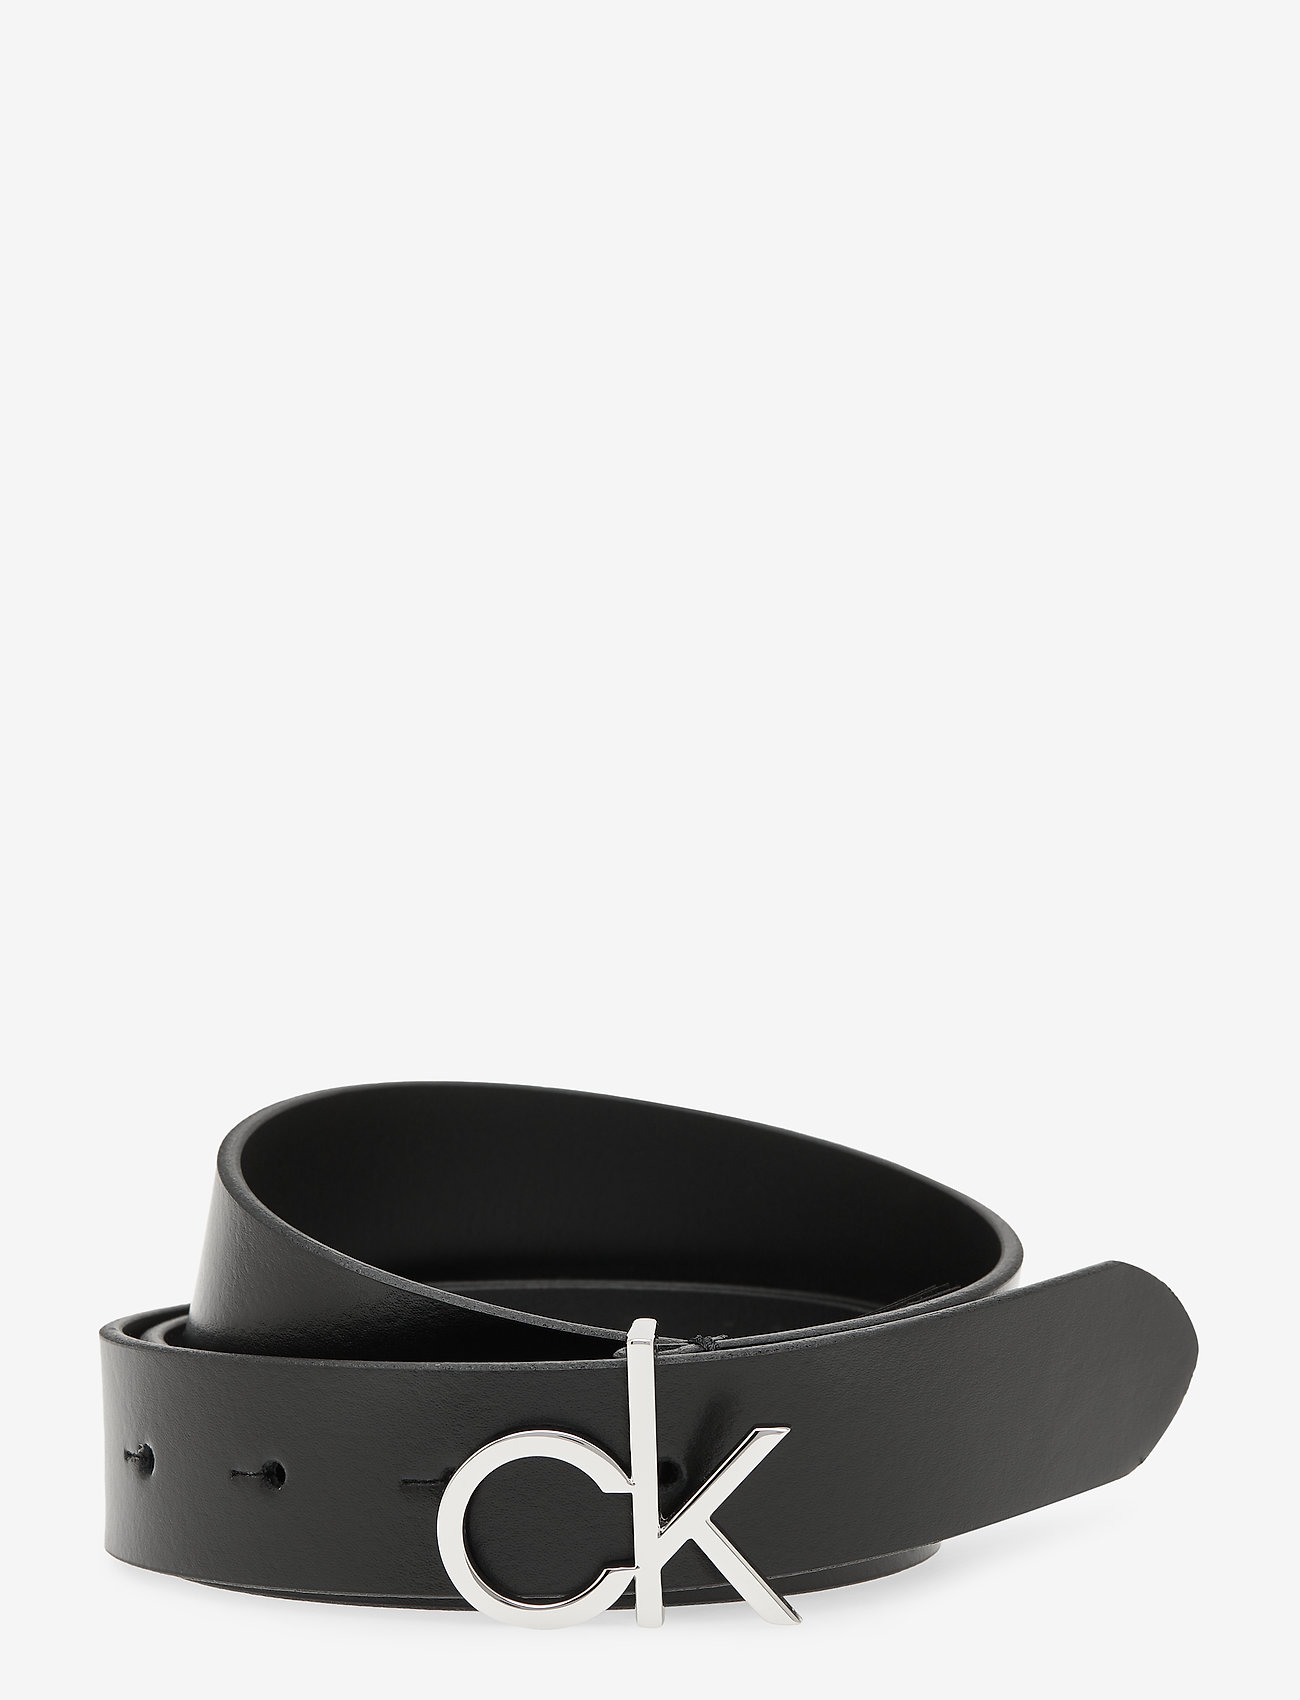 Calvin Klein Ck Logo Belt 30mm (Ck Black) - 389.35 kr | Boozt.com